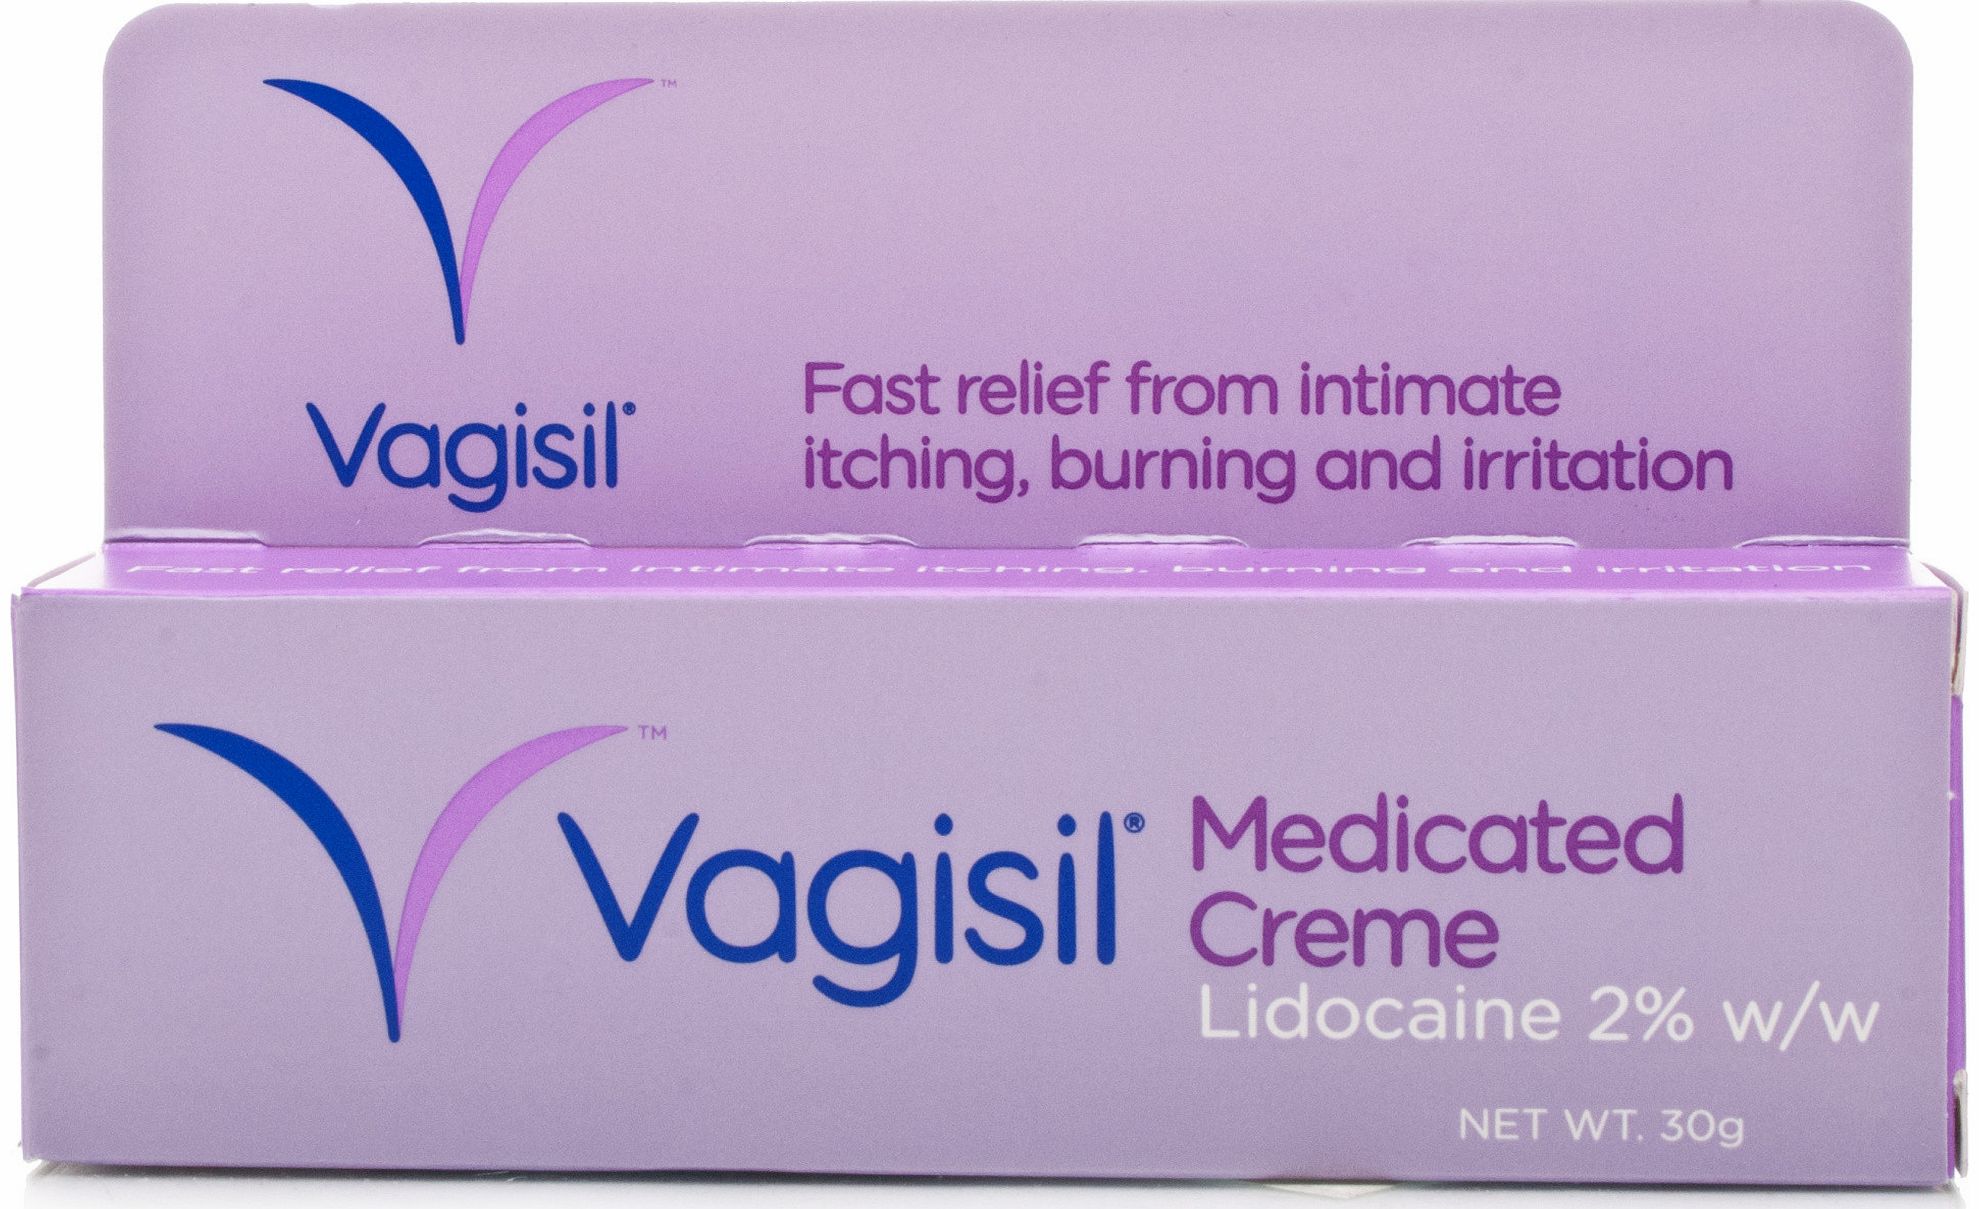 Vagisil Medicated Creme